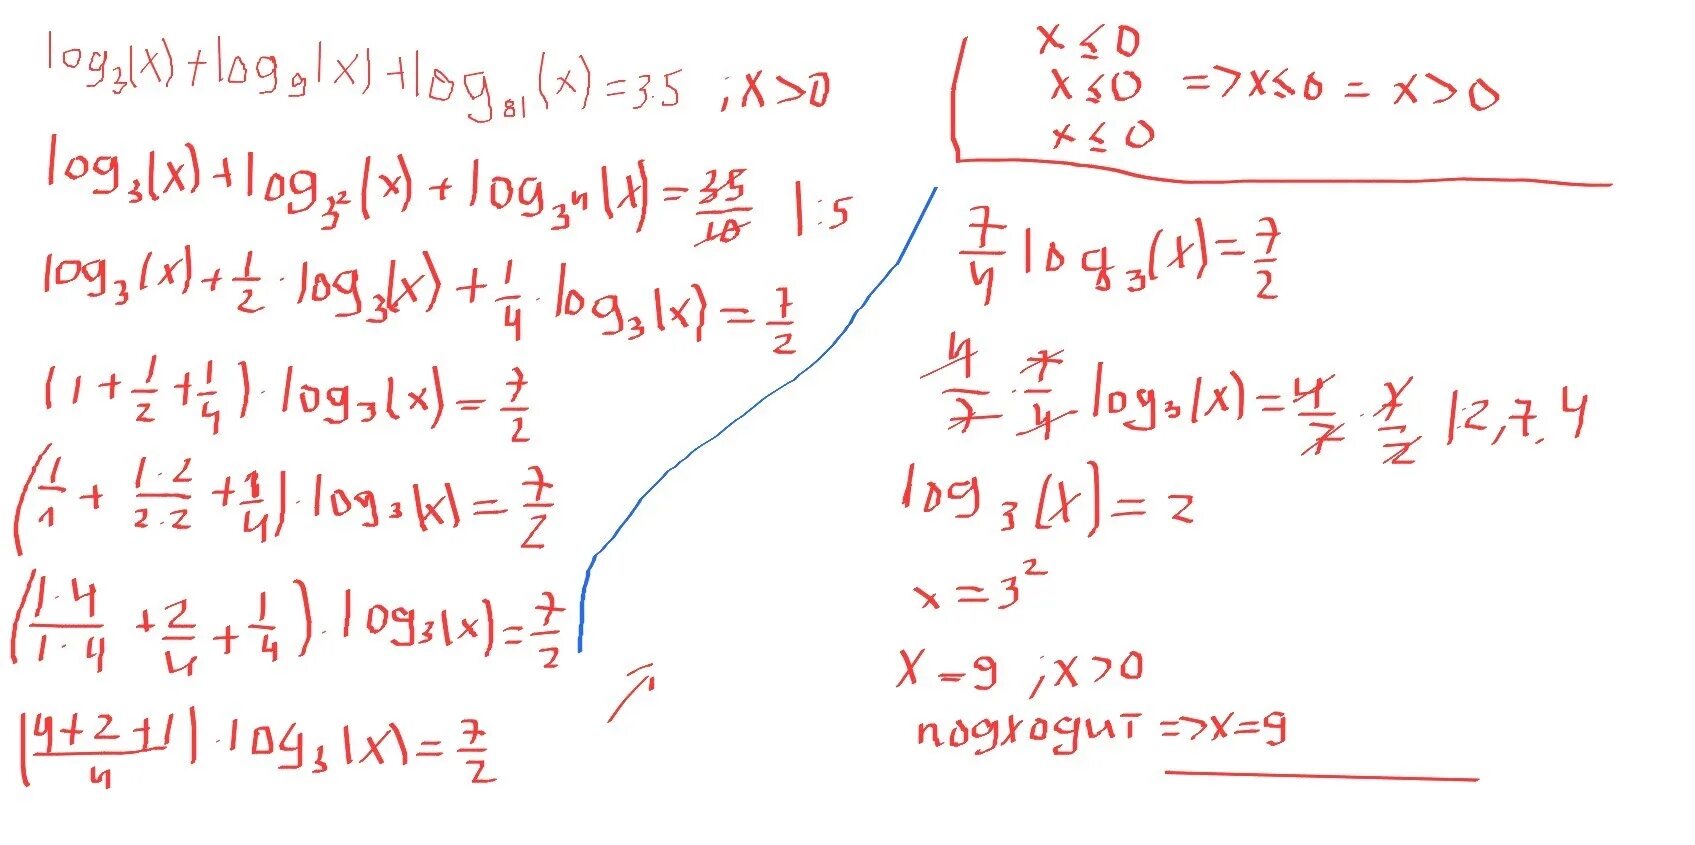 Logx/3(logx корень из 3-x). Log9 x 7 2 log81 x 3 4+log3 x 3 3x 7 3. Log 3 x-log9 x+ log81. X log3(3)=9. Log 1 2 3x 9